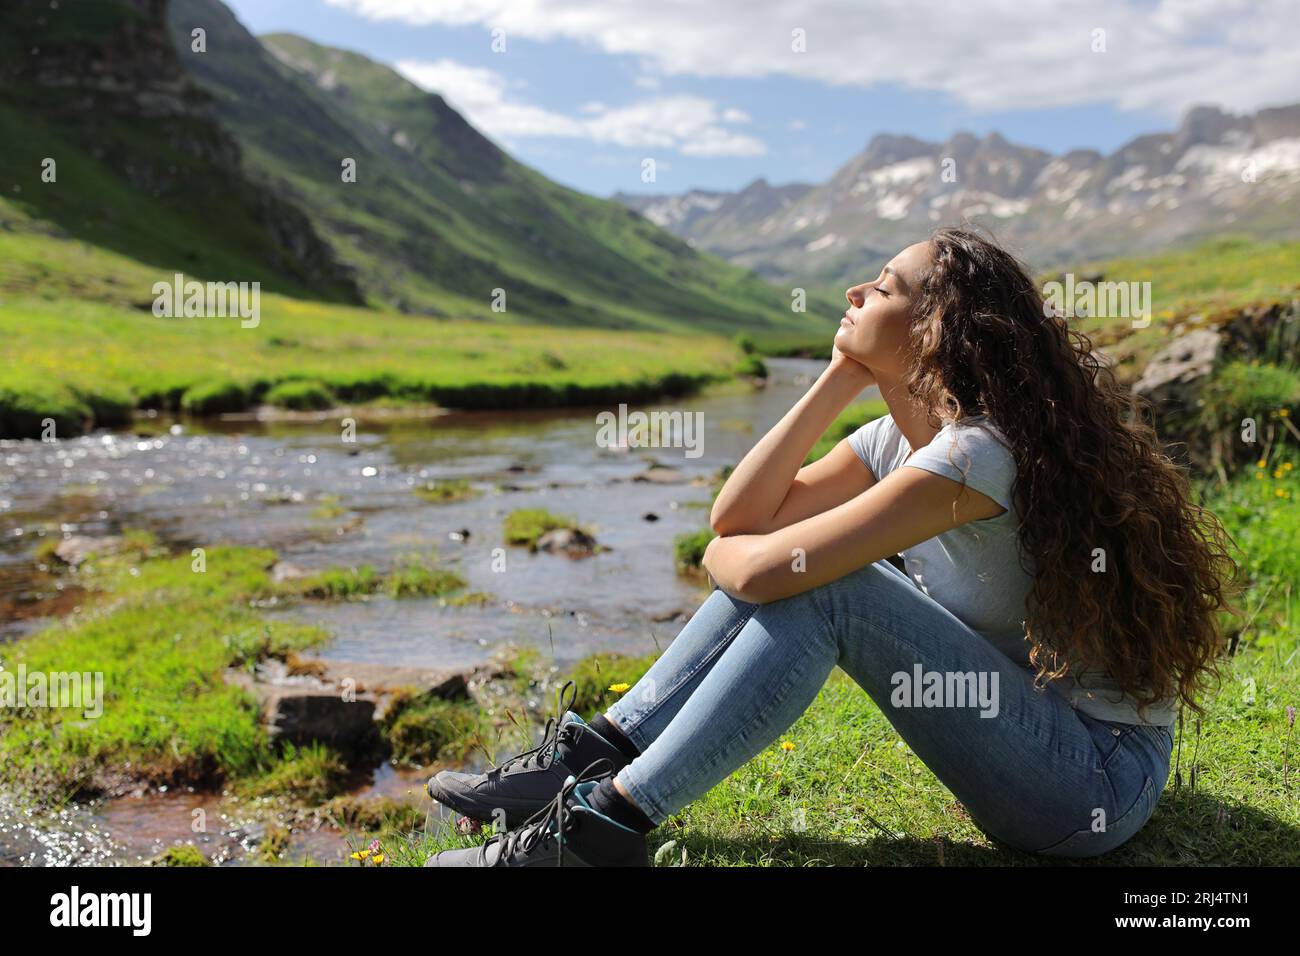 Profil einer Frau, die sich mit geschlossenen Augen in einem Flussbett im Berg entspannt und ausruht Stockfoto